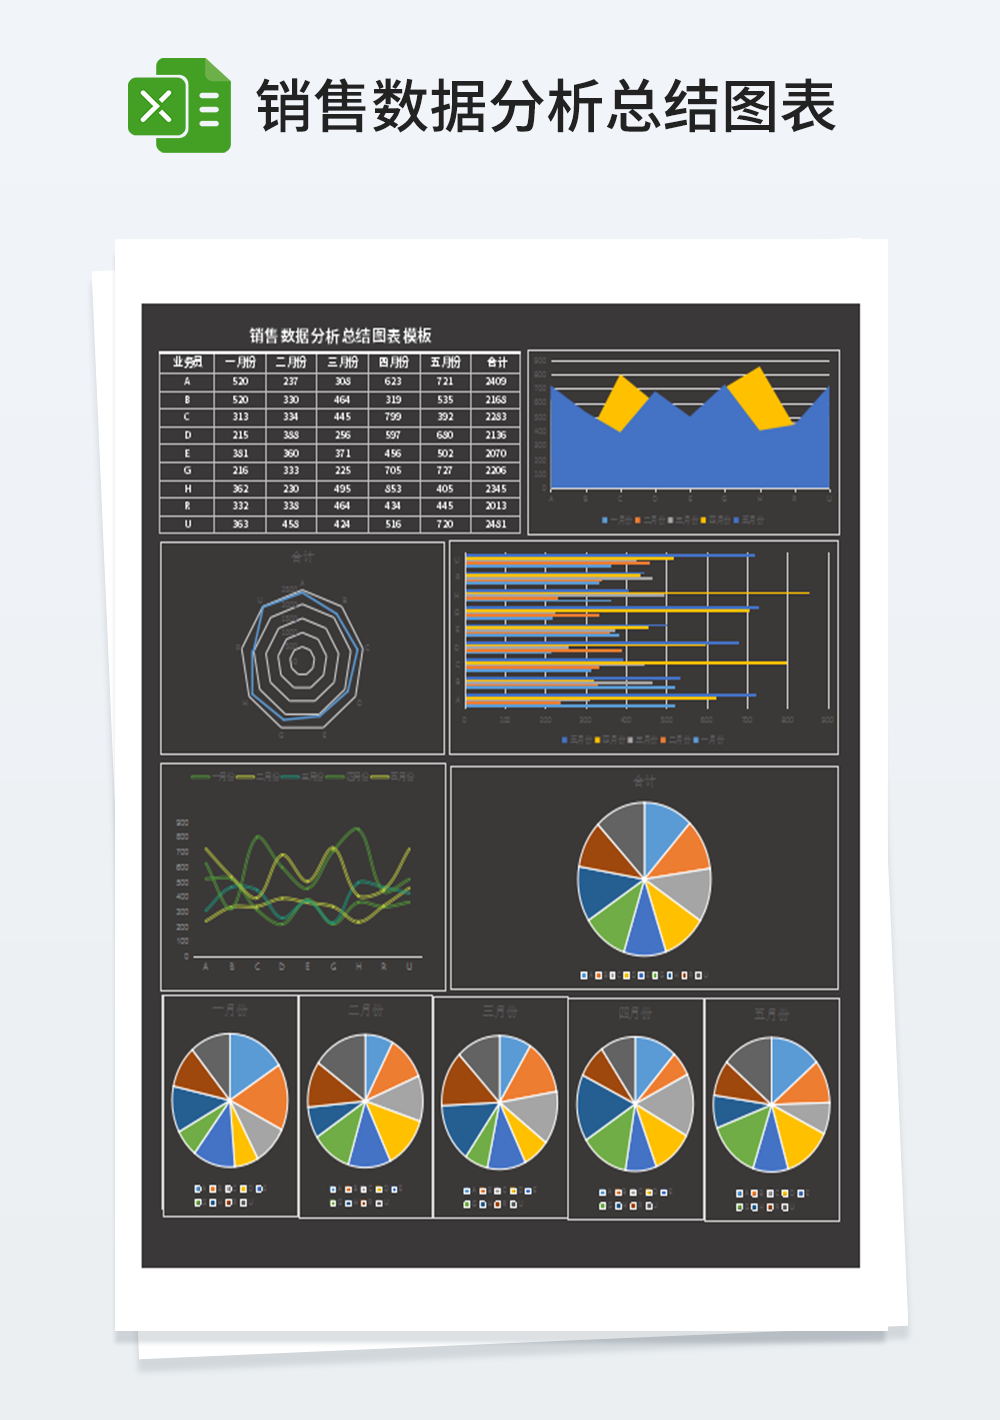 创意多表联动销售数据分析总结图表模板